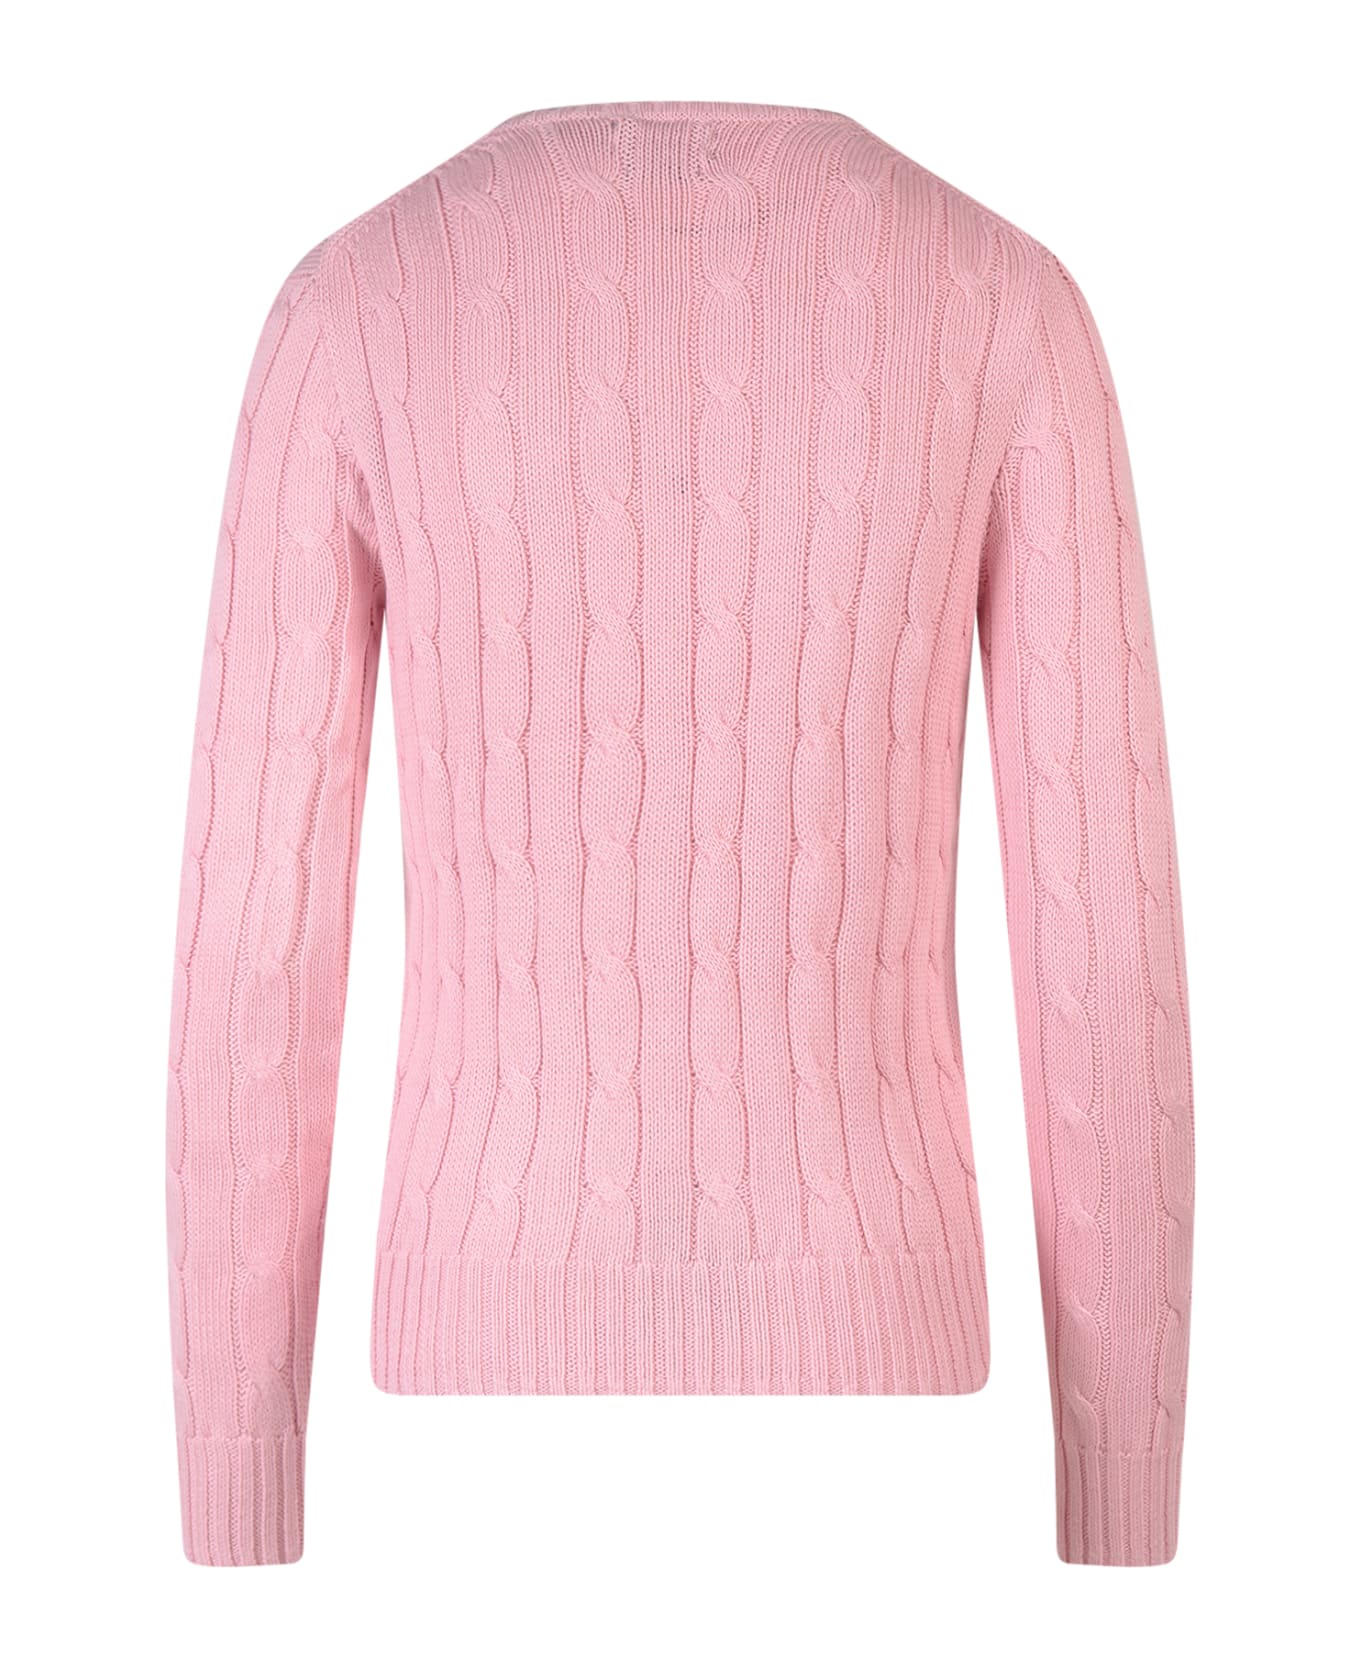 Ralph Lauren Sweater - Carmel Pink